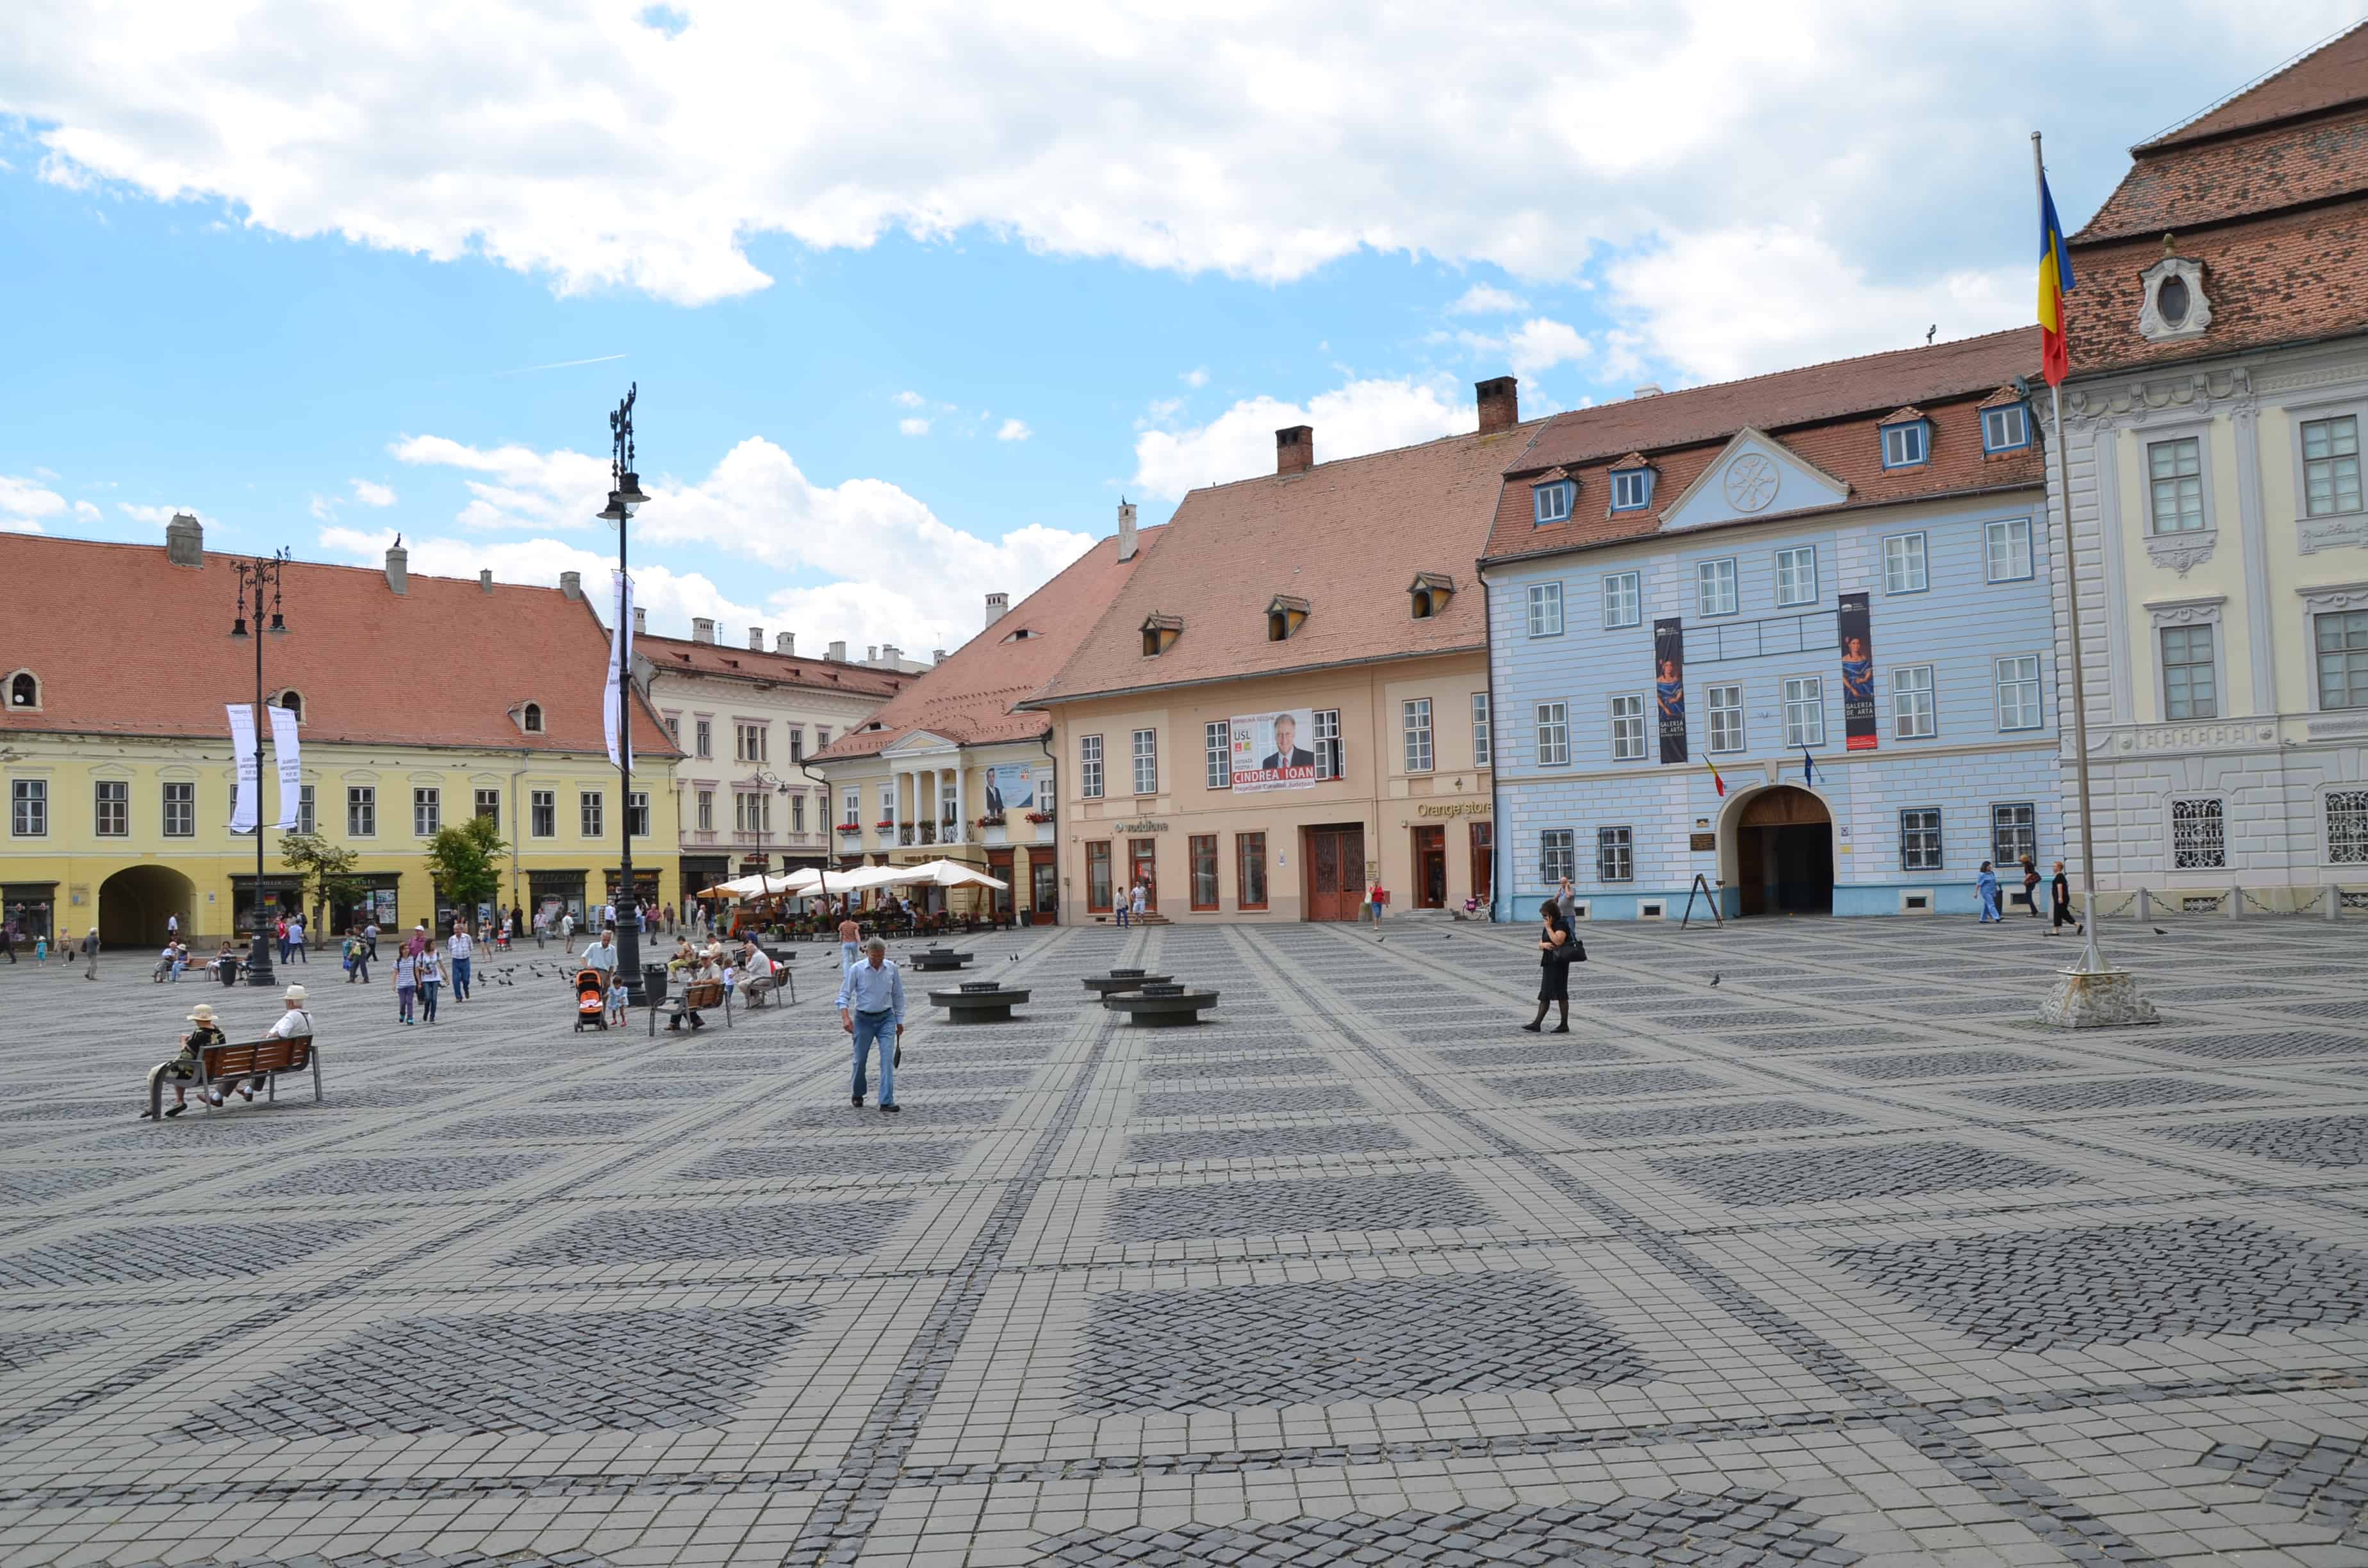 Grand Square in Sibiu, Romania